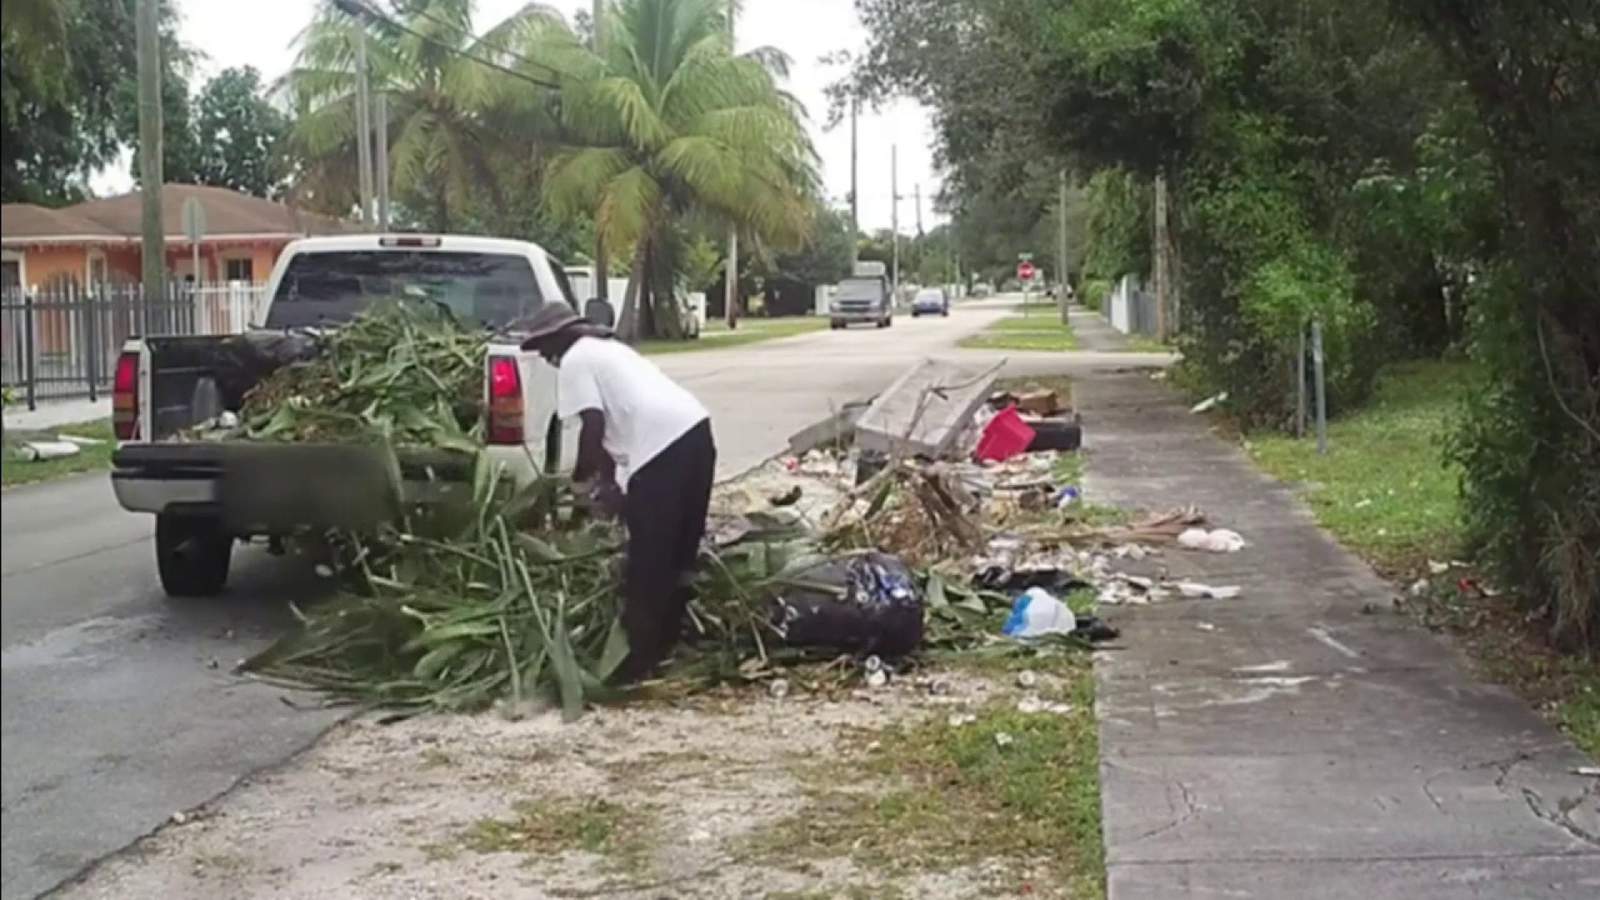 Abuelo y nieto arrestados por tirar basura al noroeste de Miami-Dade